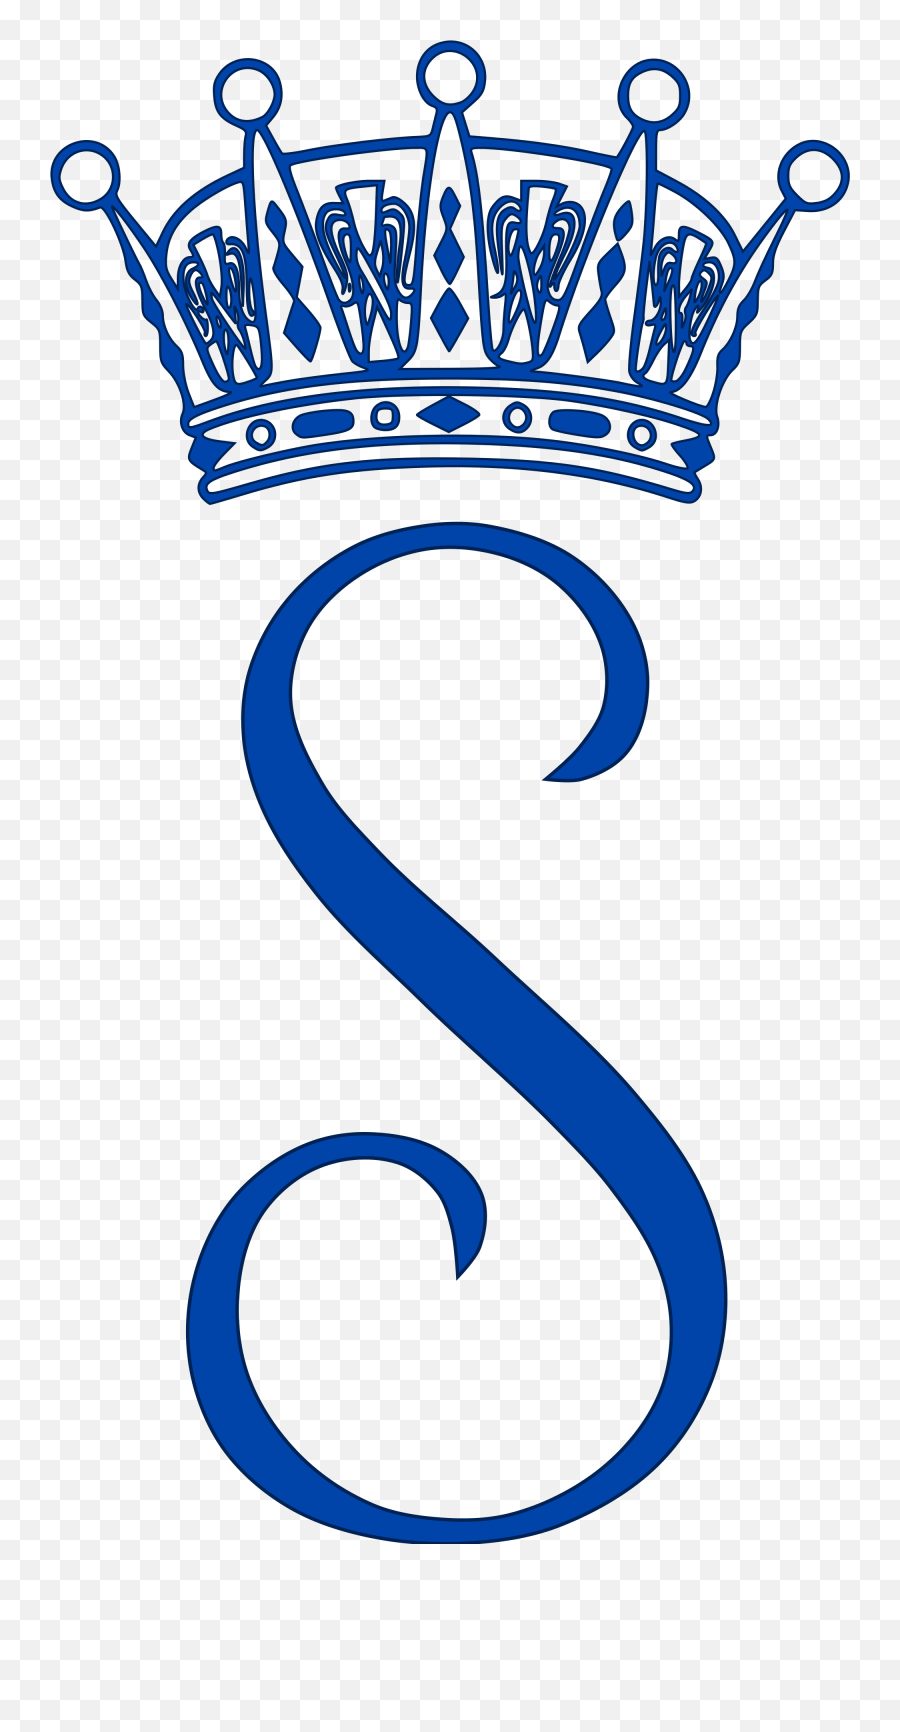 Monogram Of Princess Sofia Of Sweden - Princess Sofia Of Sweden Monogram Emoji,Sweden Emoji